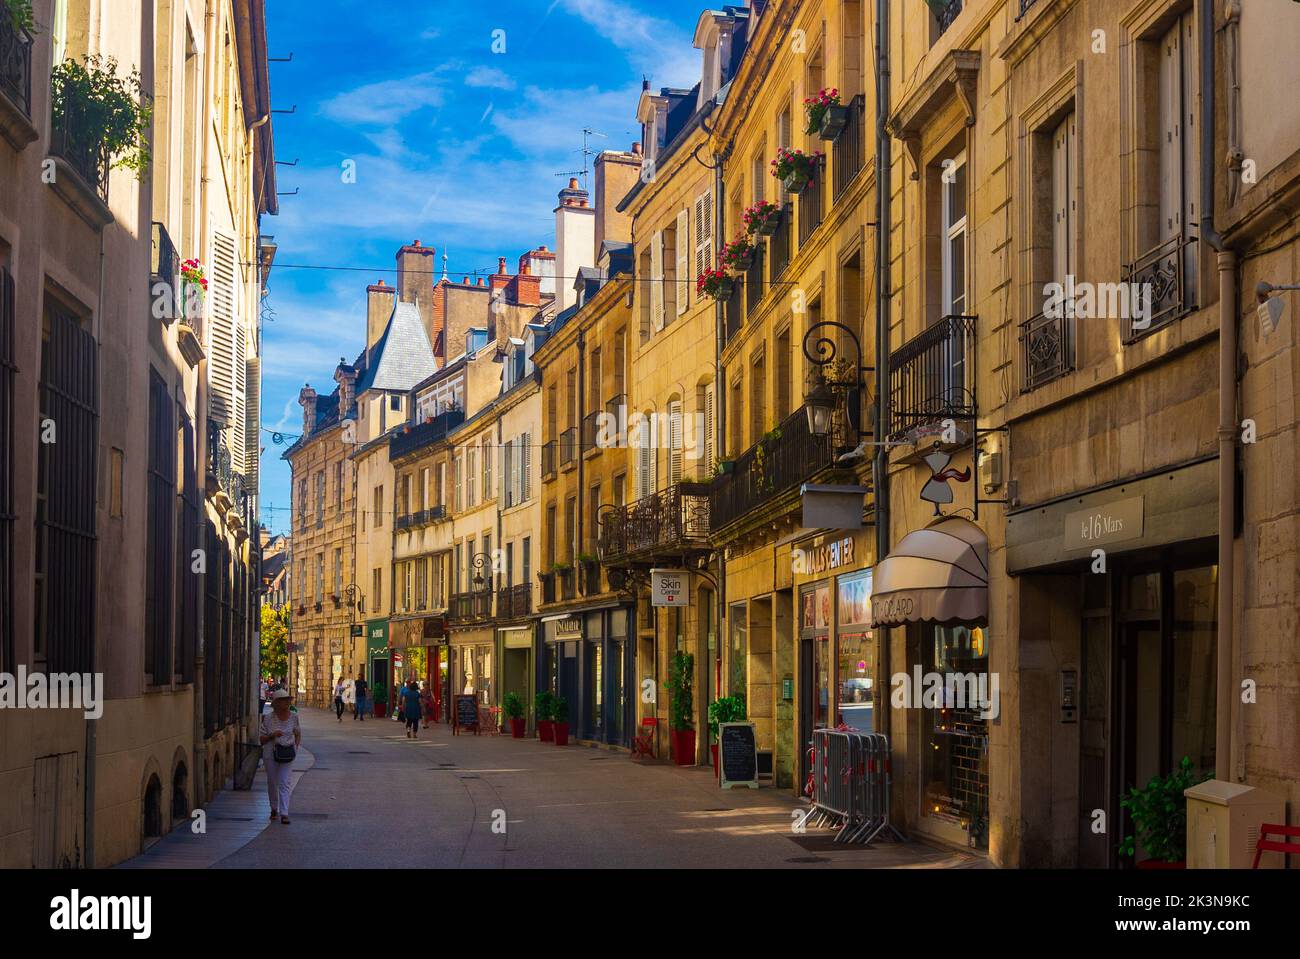 Les rues de la vieille ville de Dijon, Bourgogne, France Banque D'Images